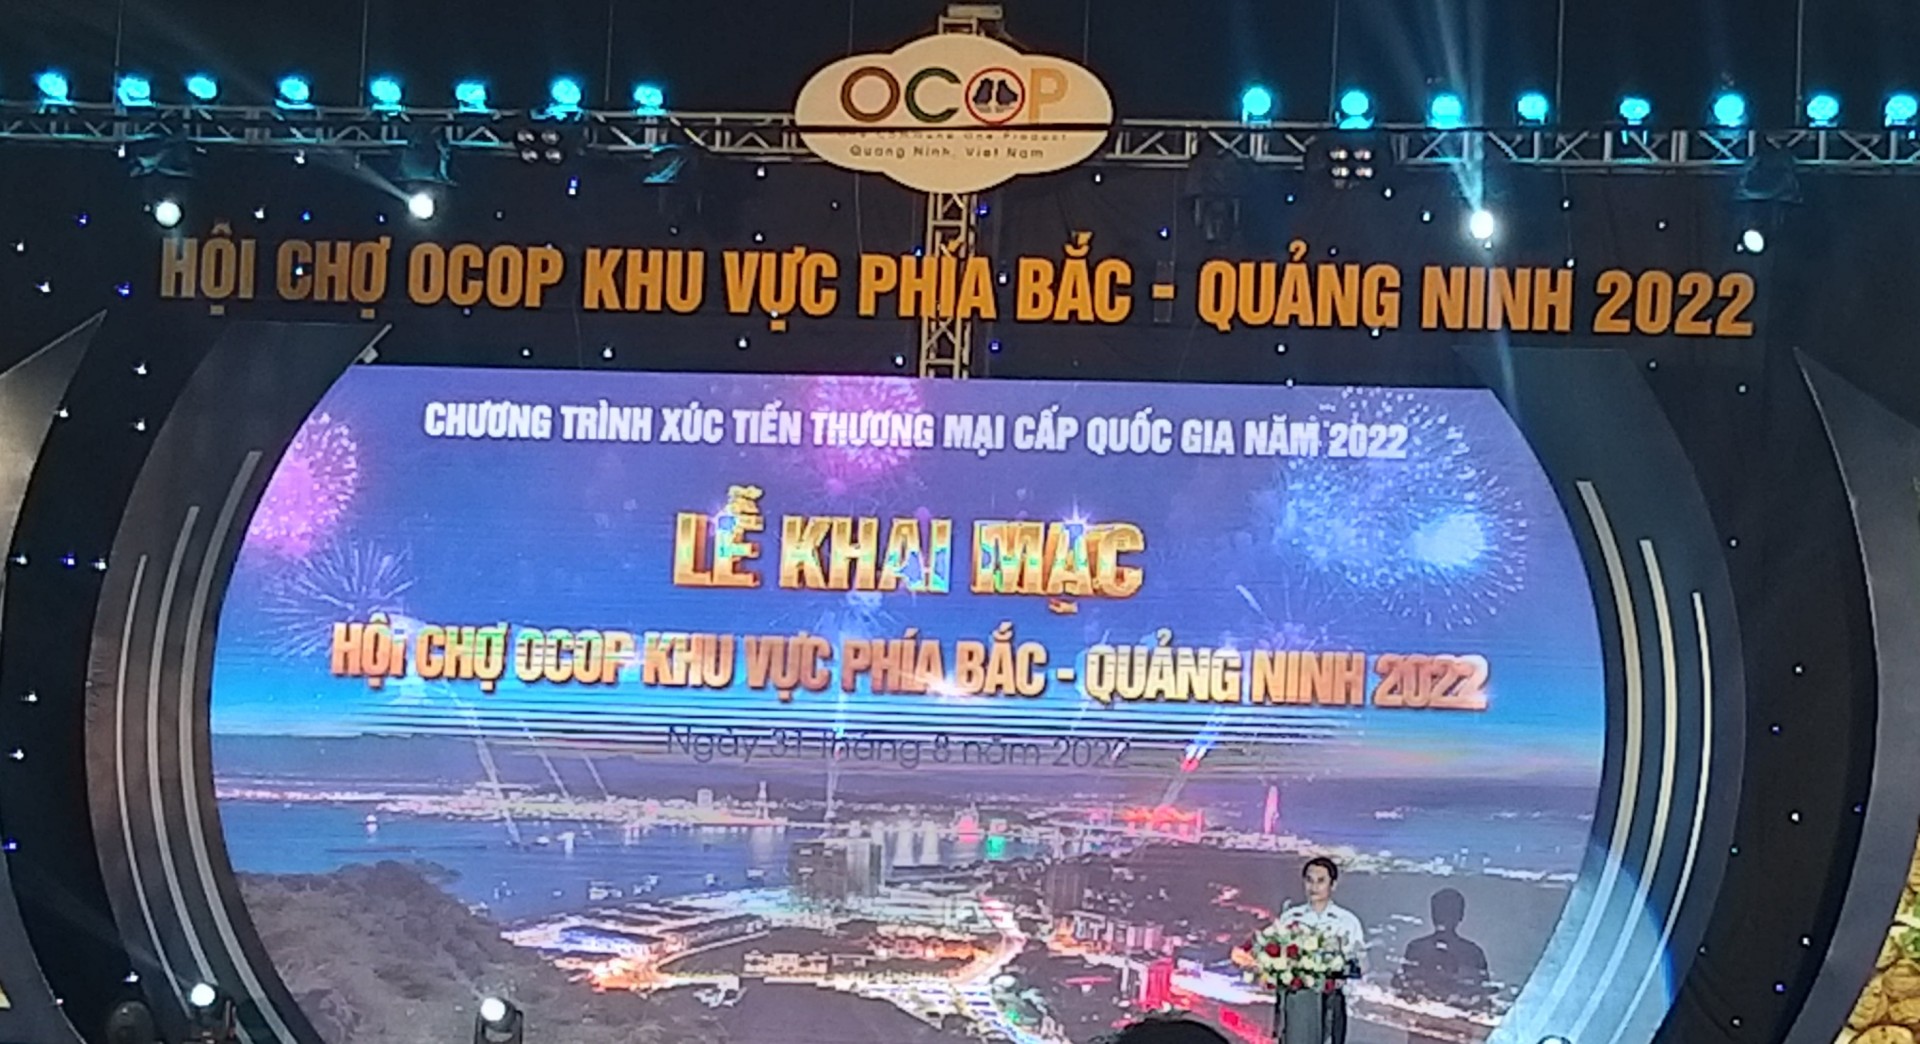 Khai mạc hội chợ OCOP Khu vực phía Bắc - Quảng Ninh 2022